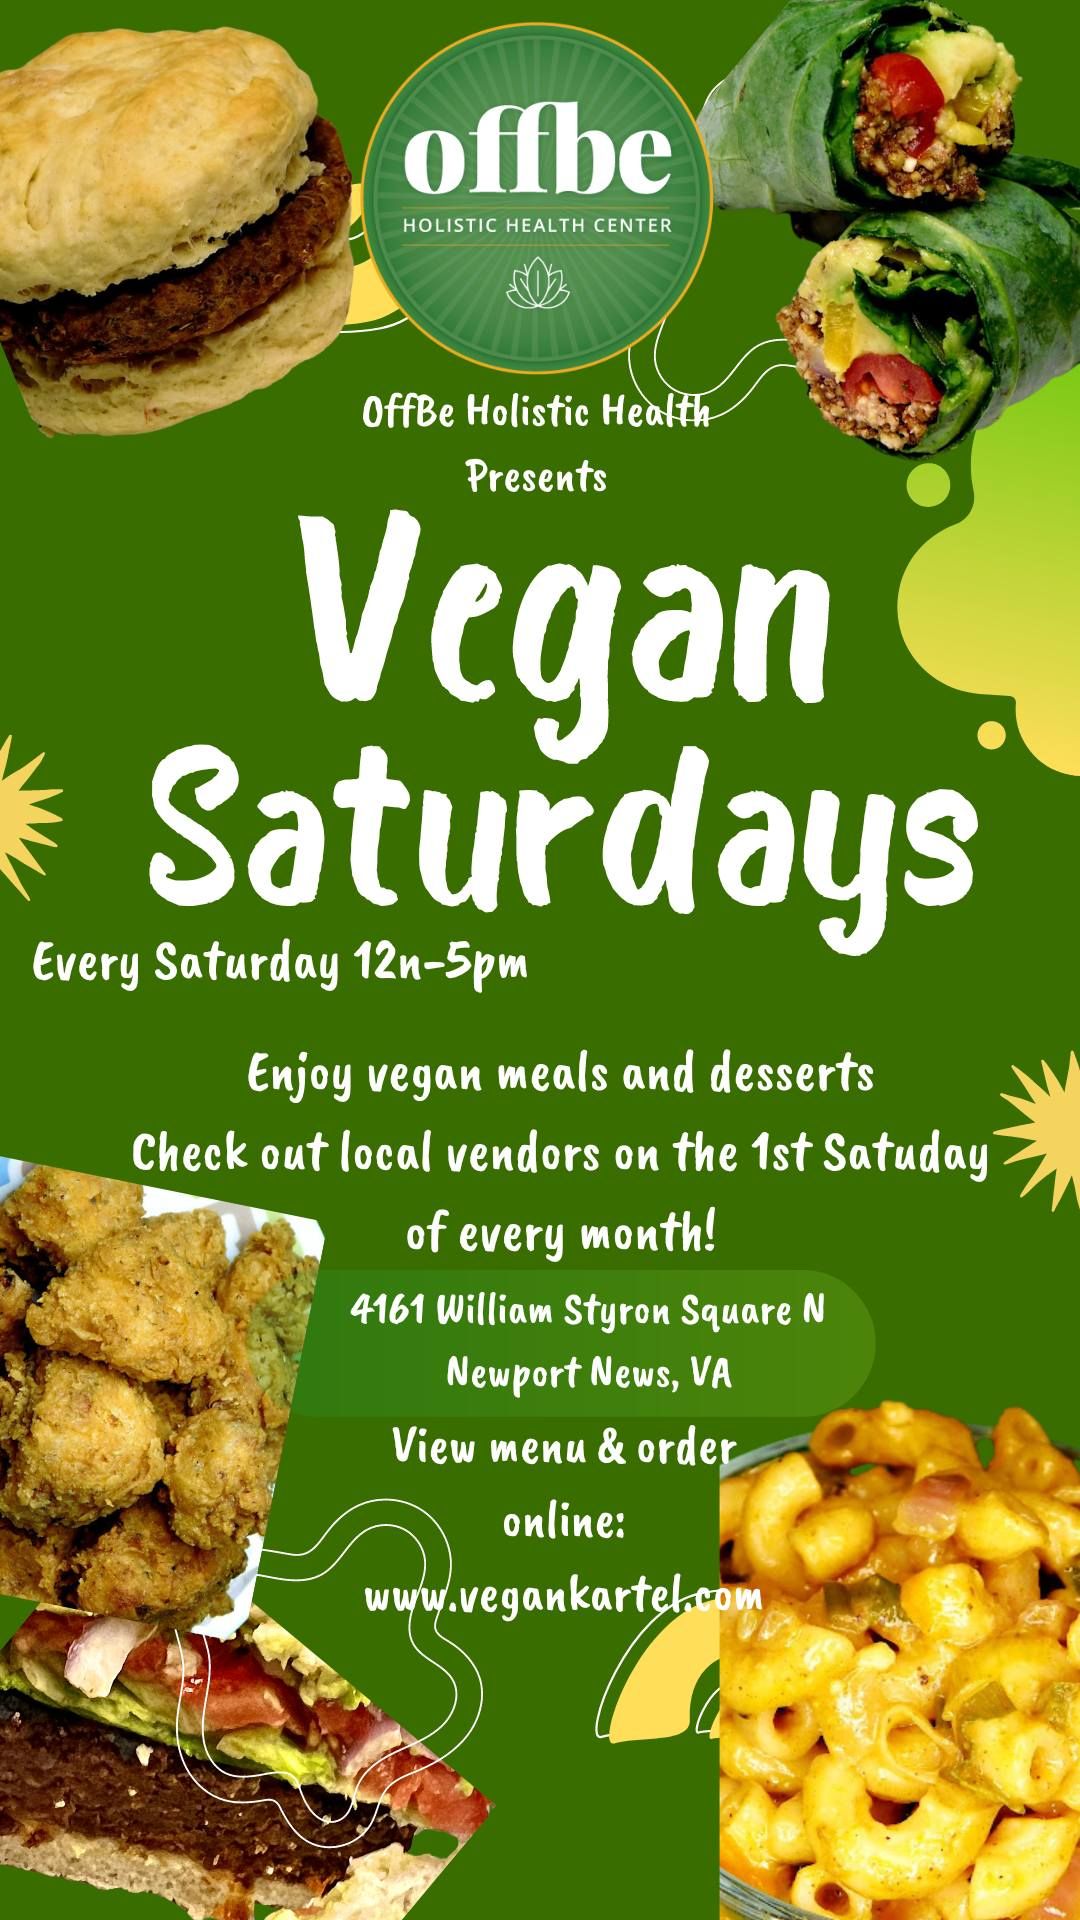 Vegan Saturdays at OffBe